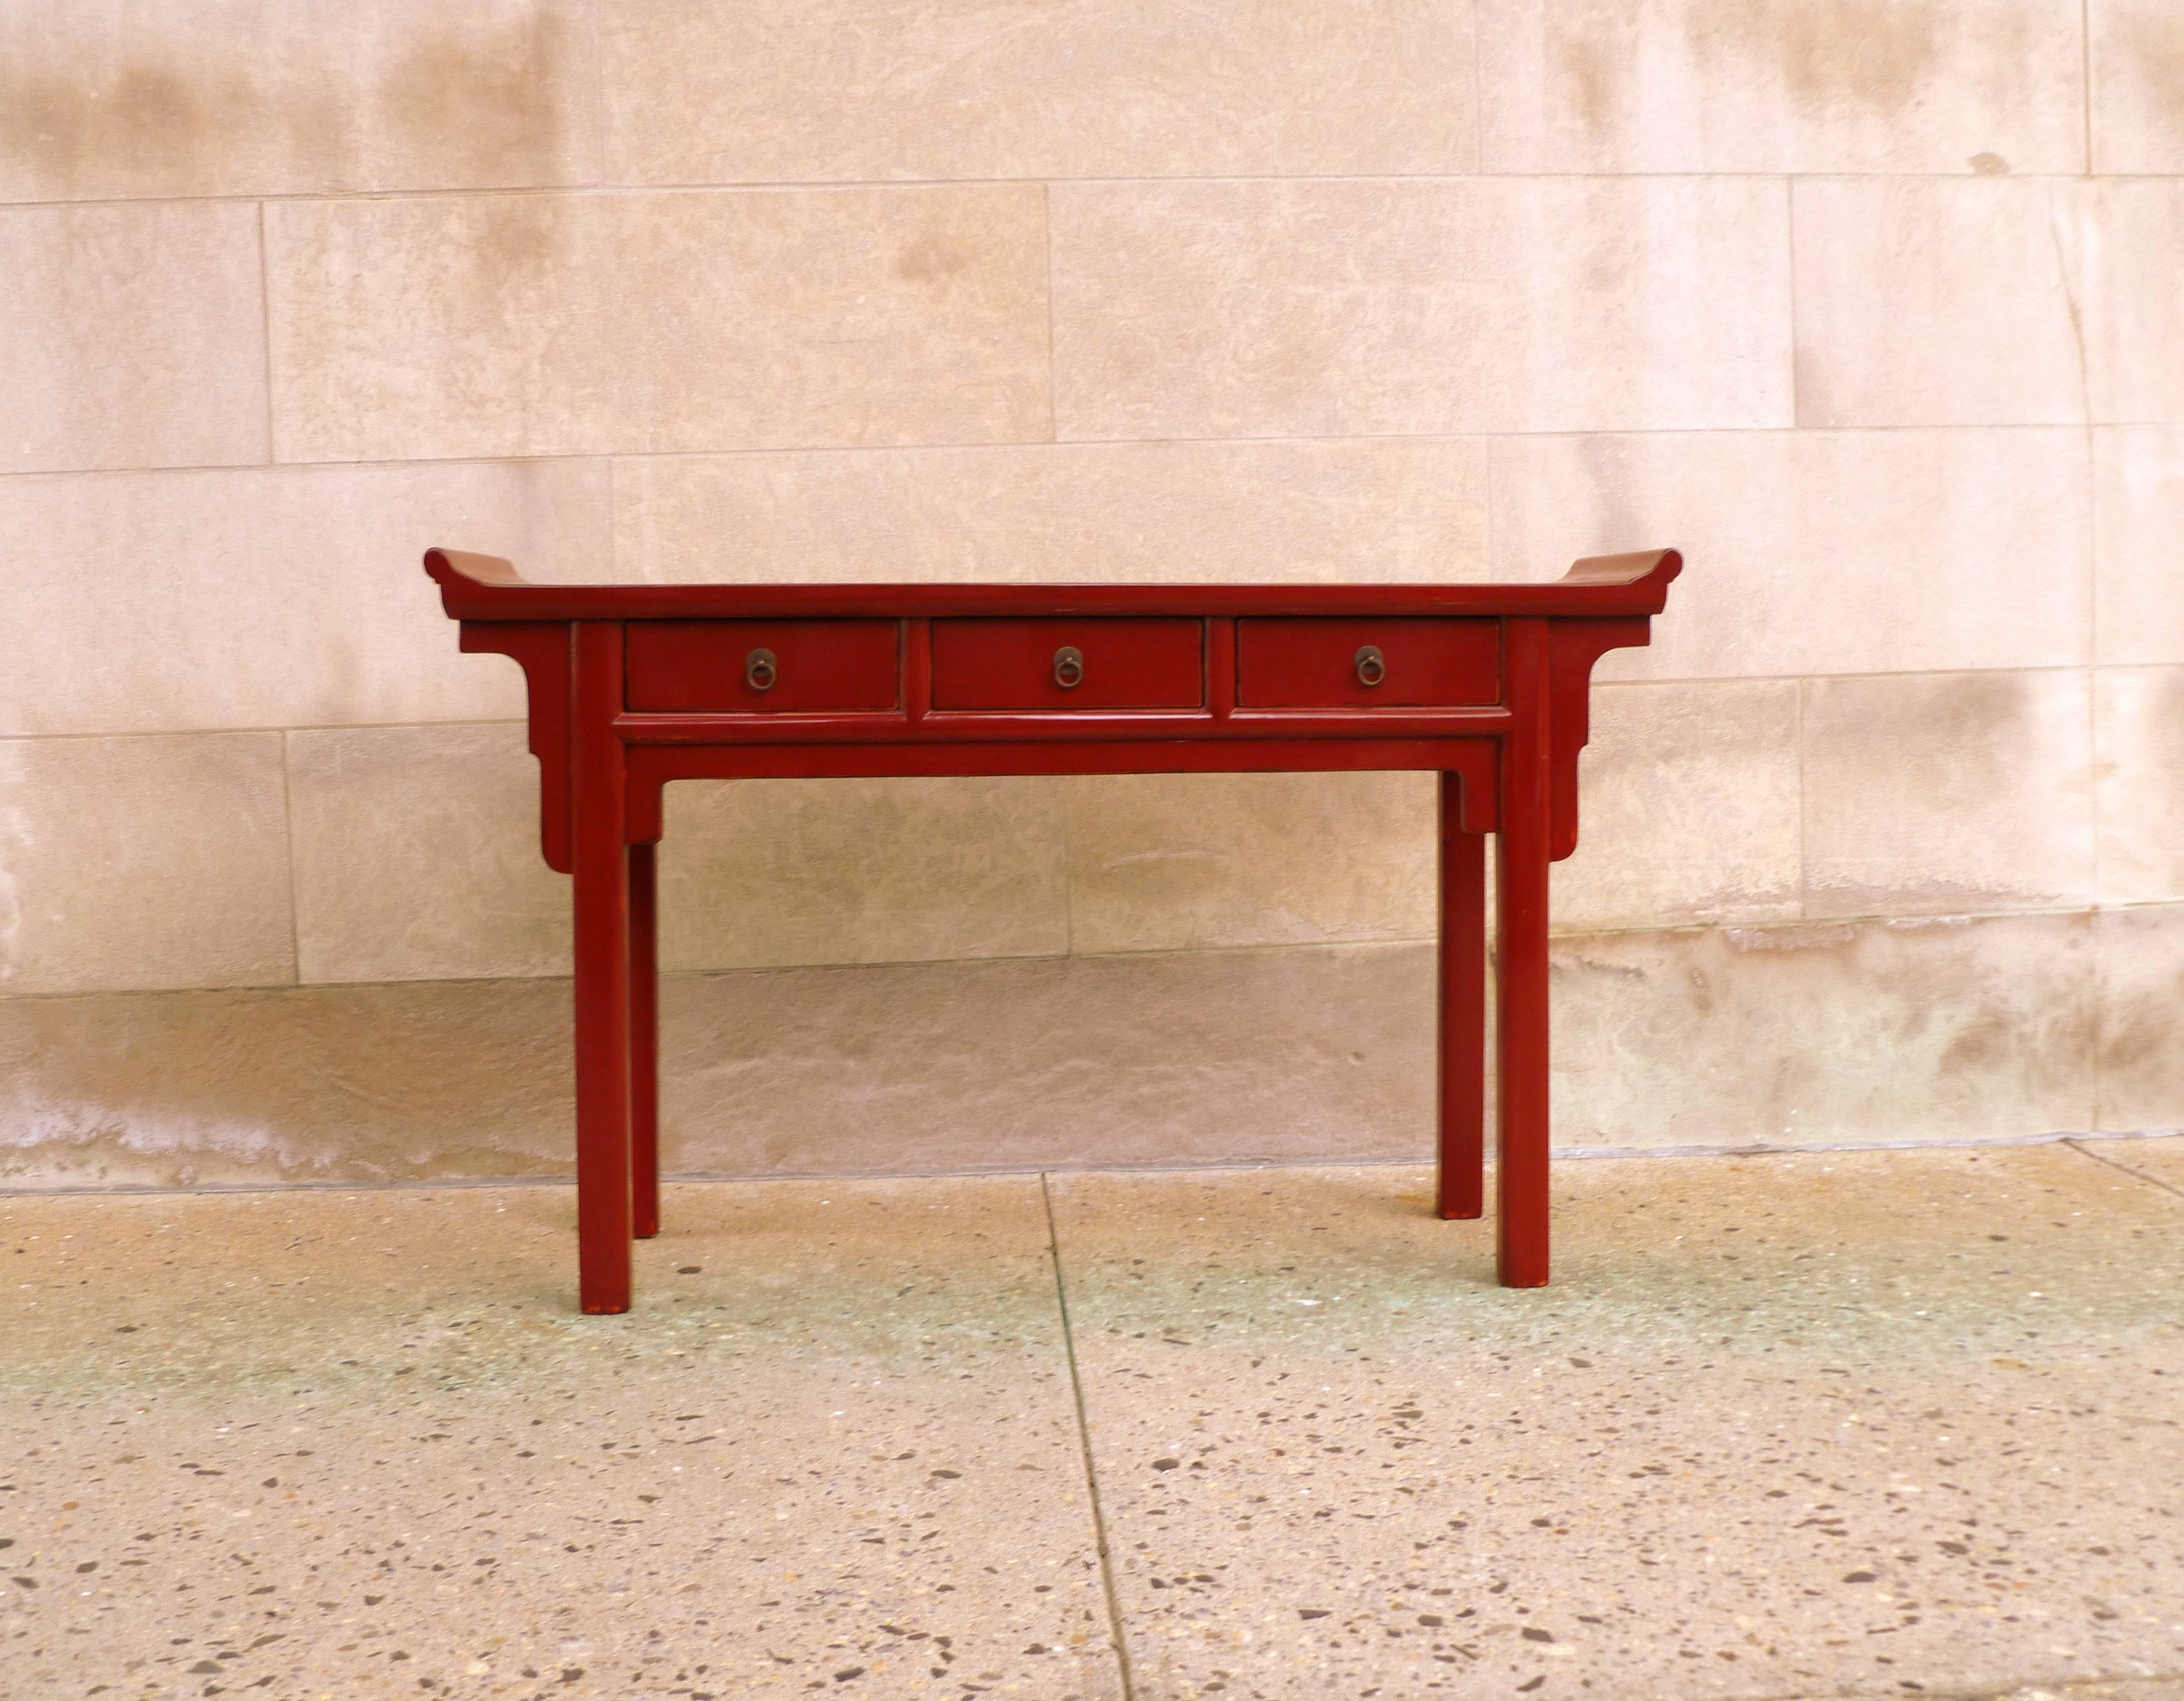 Ein eleganter, rot lackierter Konsolentisch mit drei Schubladen und umgedrehten Flanschen, schöne Farbe, Form und Linien. Wir führen feine Qualitätsmöbel mit eleganter Verarbeitung und sind viele Male in 